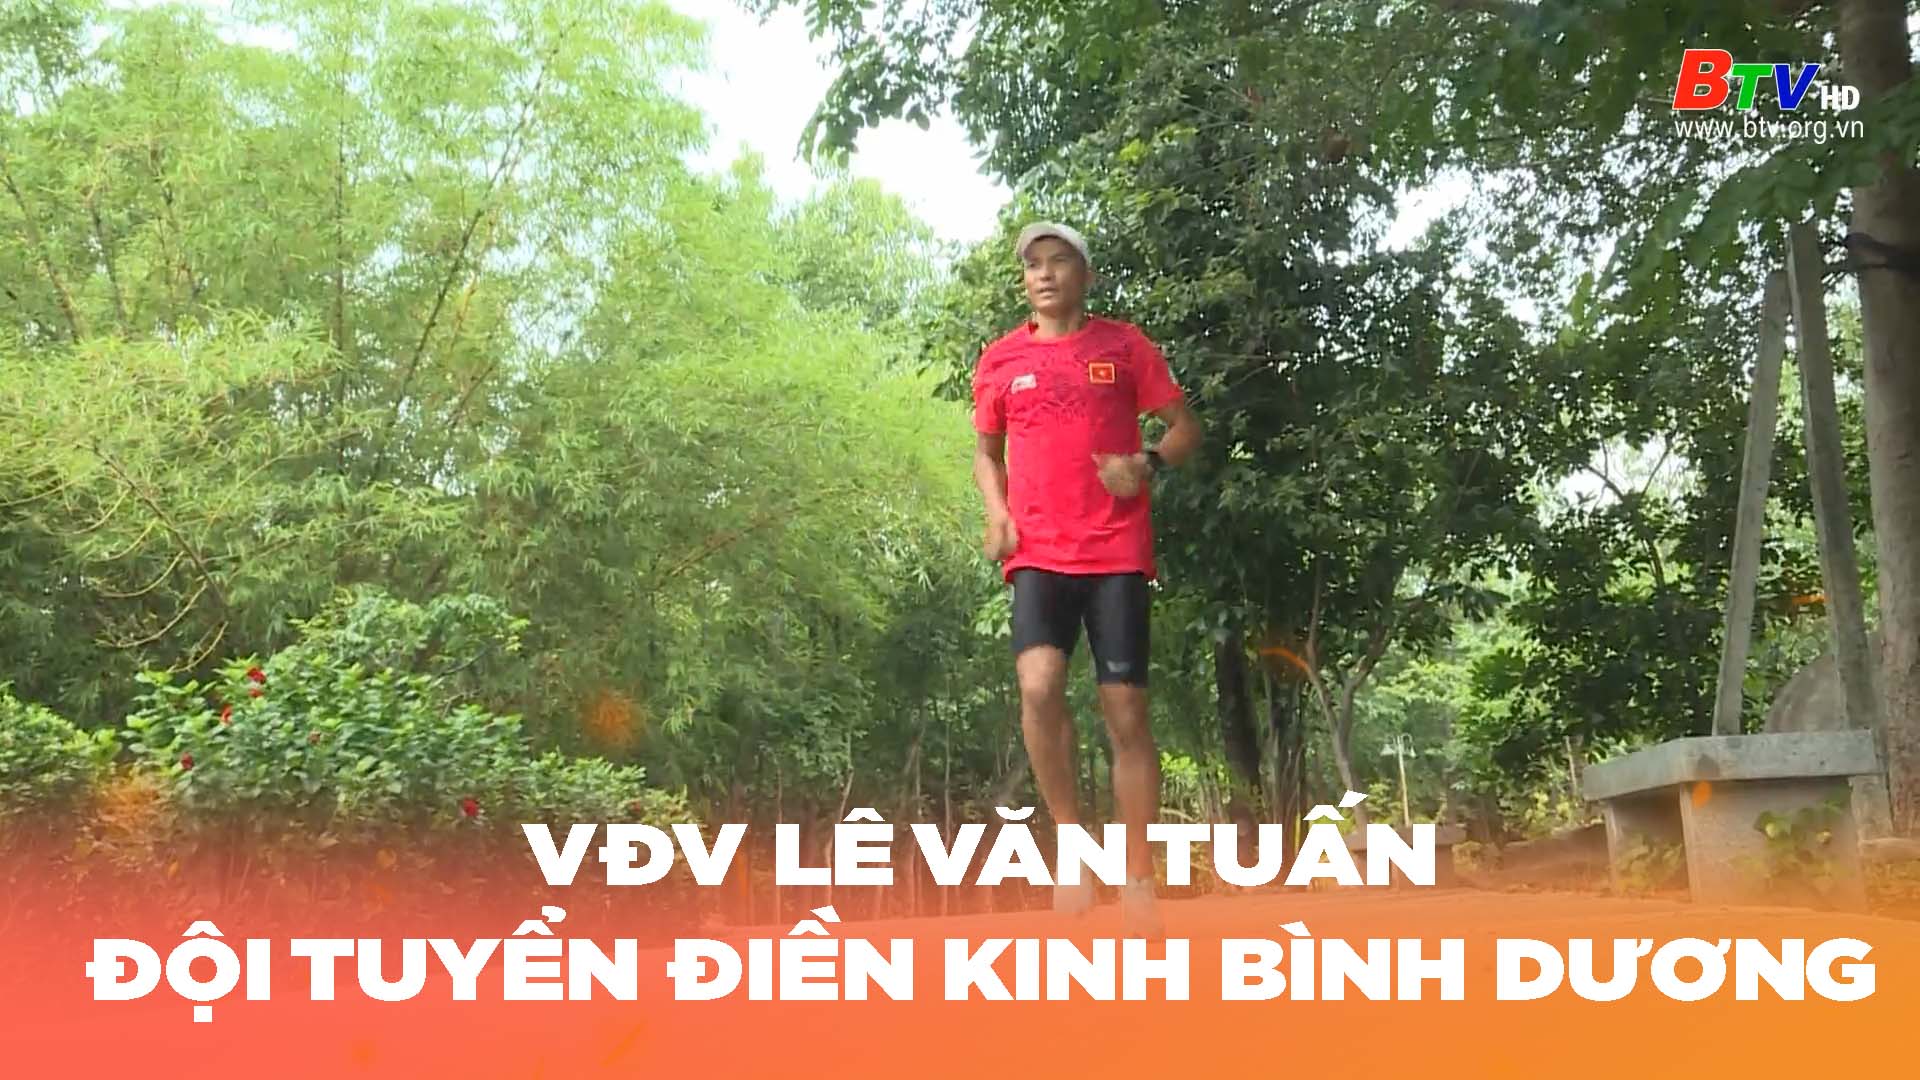 VĐV Lê Văn Tuấn – Đội tuyển điền kinh Bình Dương